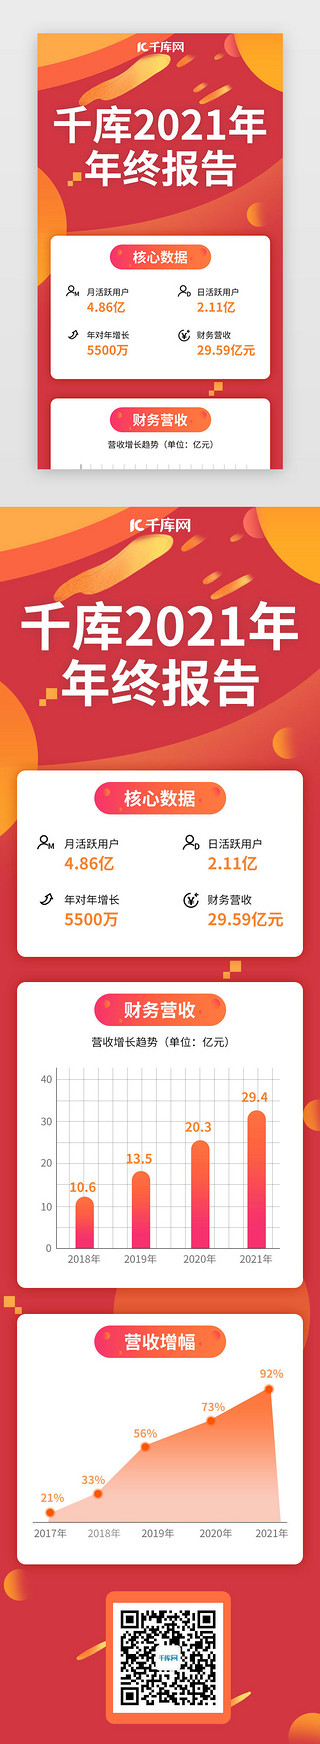 大惠战年终庆UI设计素材_年终总结网页时尚红色曲线图